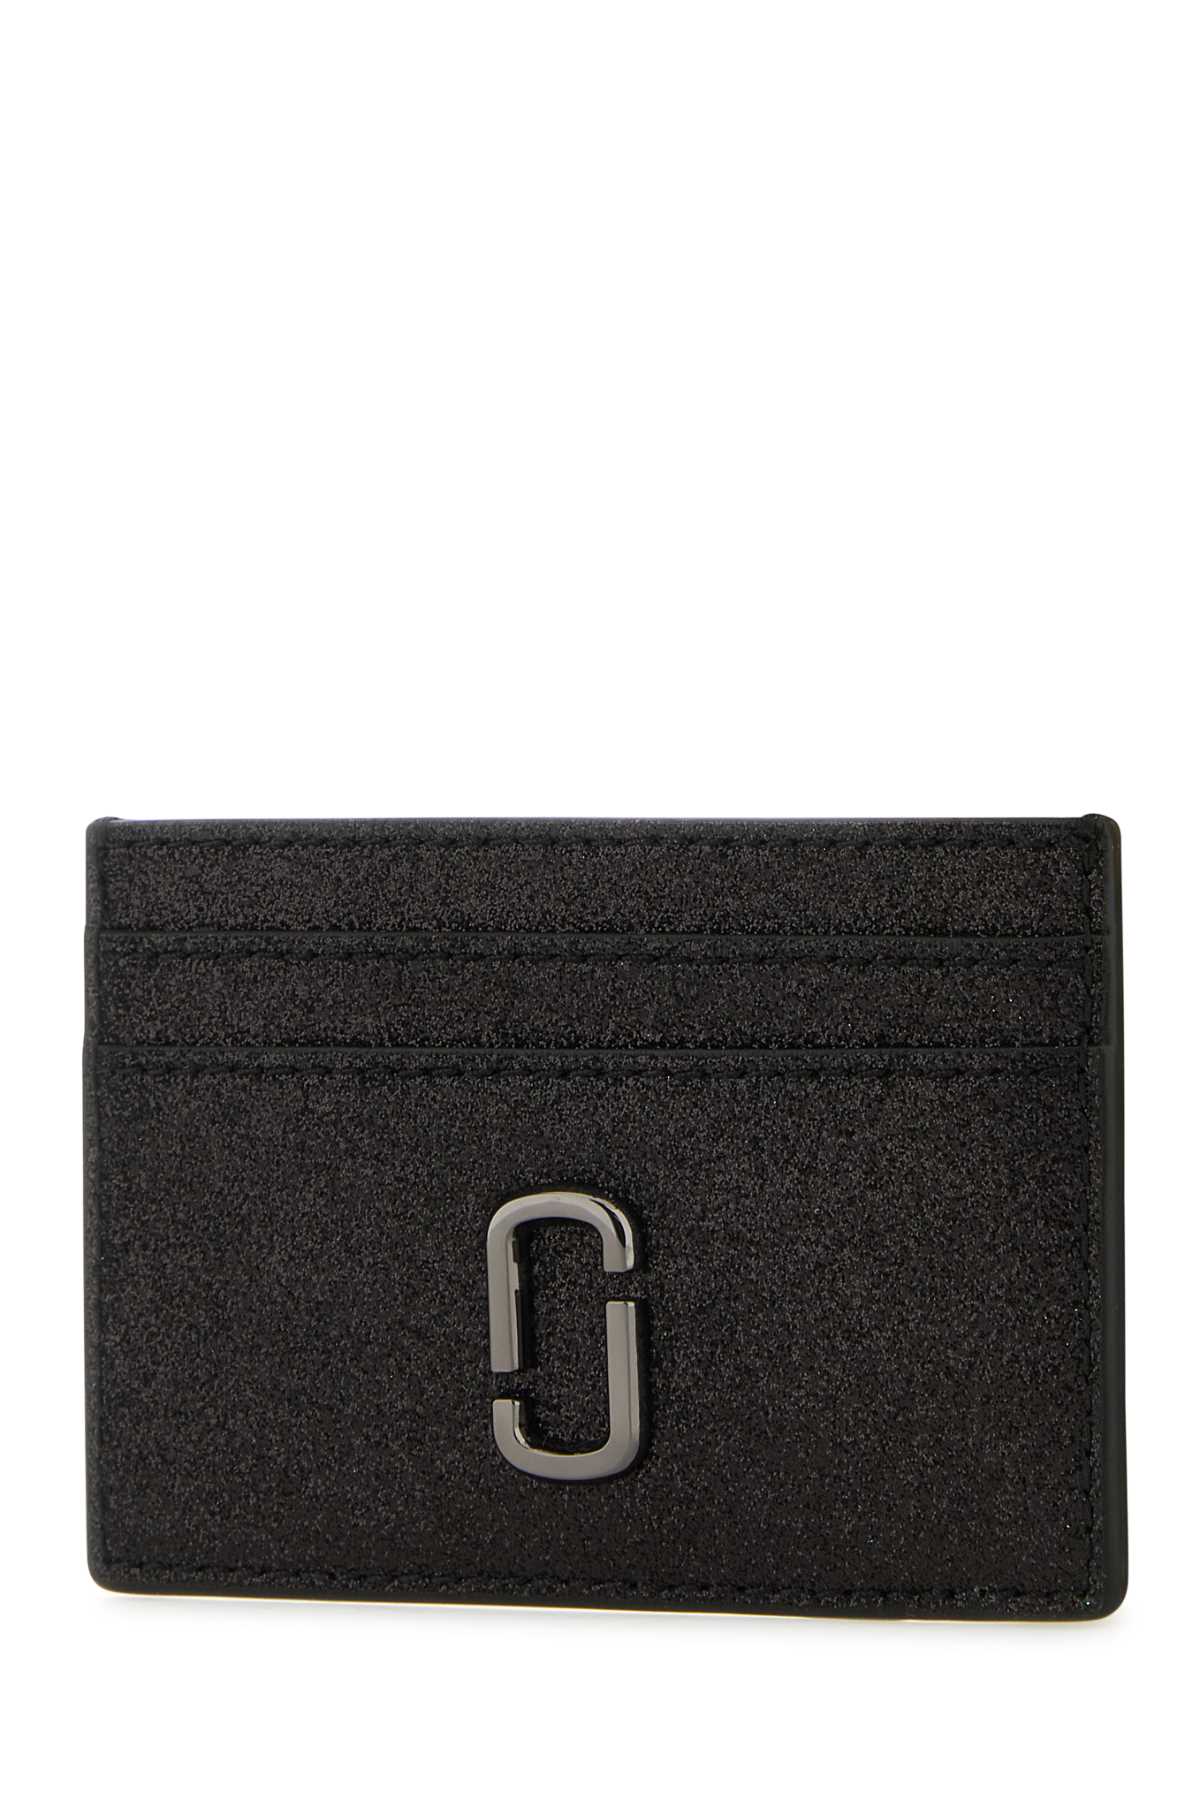 Shop Marc Jacobs Black Leather J Marc Card Holder